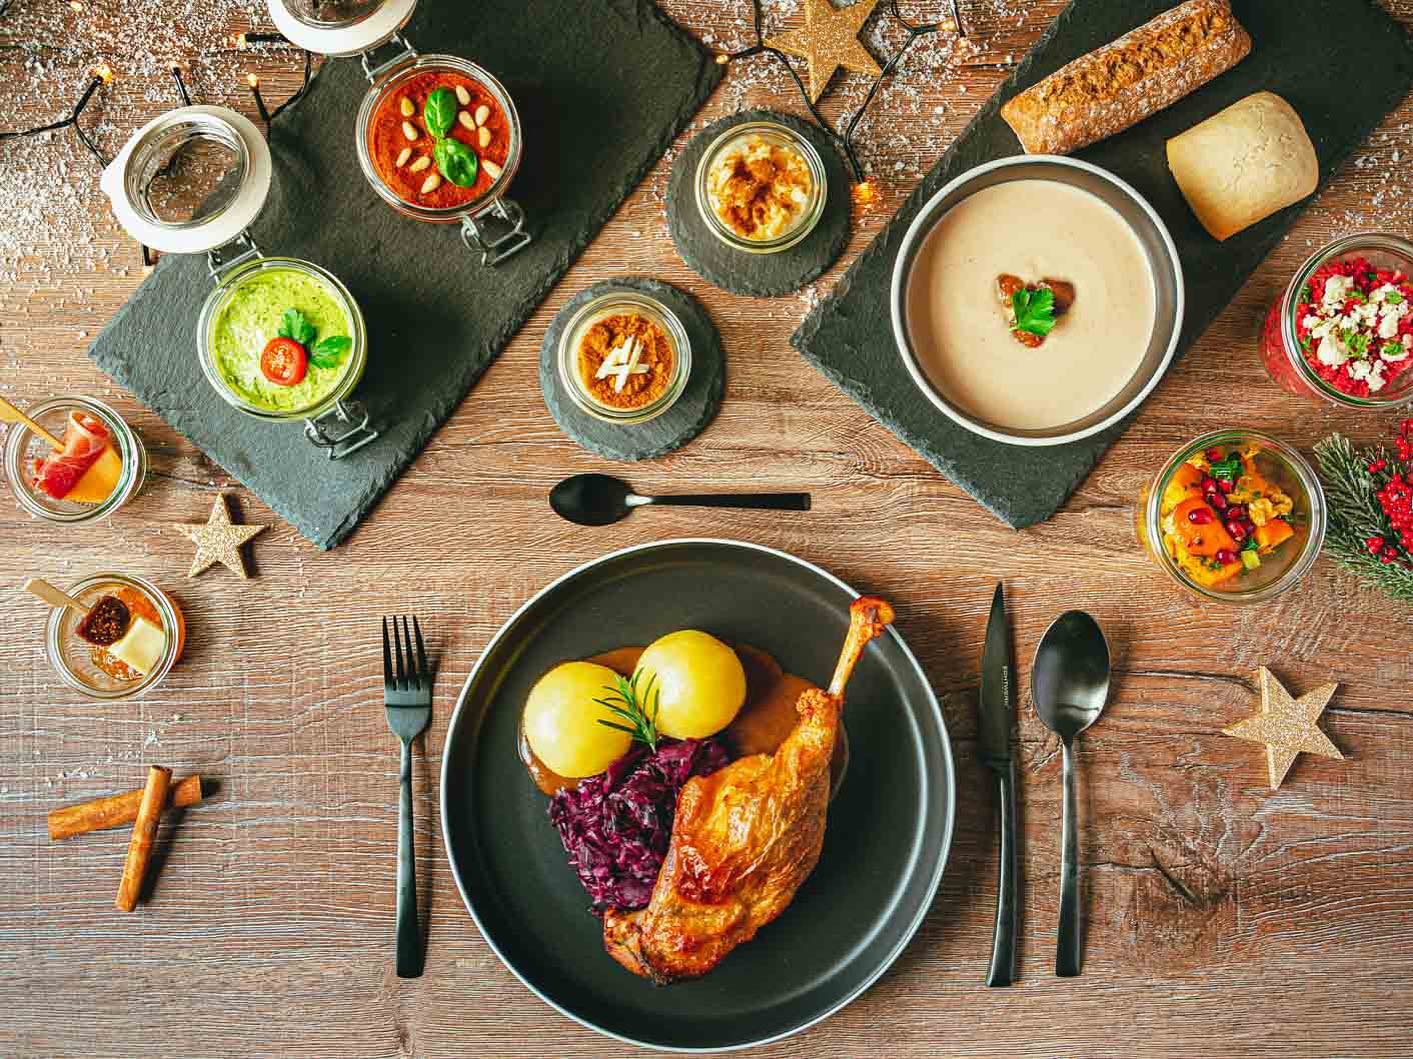 Weihnachten mit bärlifood 🐻🎅🏼

Planen Sie mit uns Ihre Weihnachtsfeier im Büro. Genießen Sie gemeinsam weihnachtliche Leckereien und lassen Sie sich kulinarisch verwöhnen!

📩 info@baerlifood.de
🌐 www.baerlifood.de

#bärlifood #business #catering #missionlecker #christmas #buffet #lunch #team #event #eat #food #fingerfood #xmascatering #onlineshop #berlin